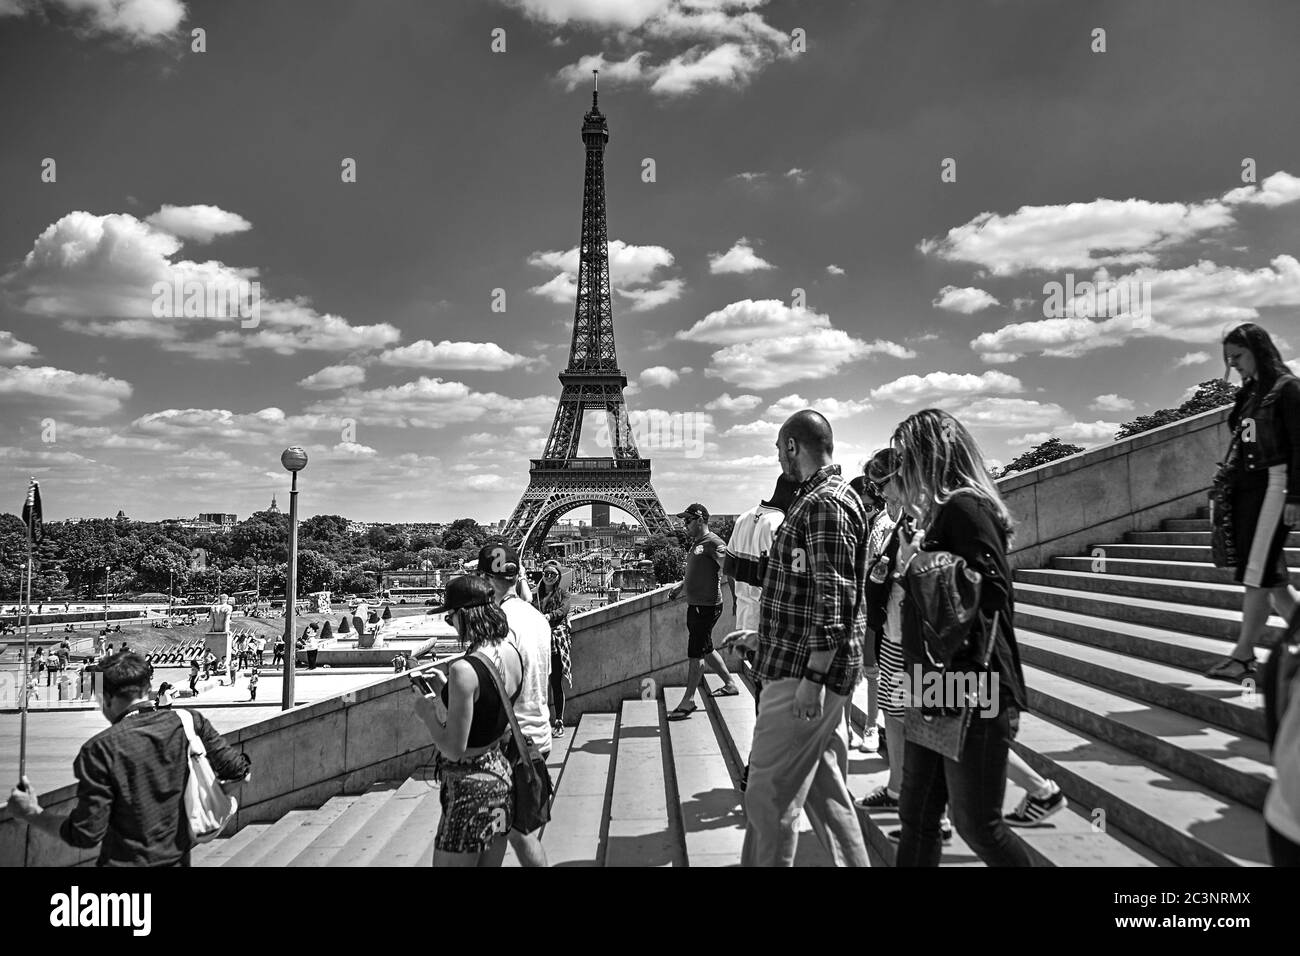 Paris, Frankreich - 19. Juni 2015: Eiffelturm an einem sonnigen Sommertag. Leute, die die Treppe gehen. Schwarzweiß-Bild Stockfoto